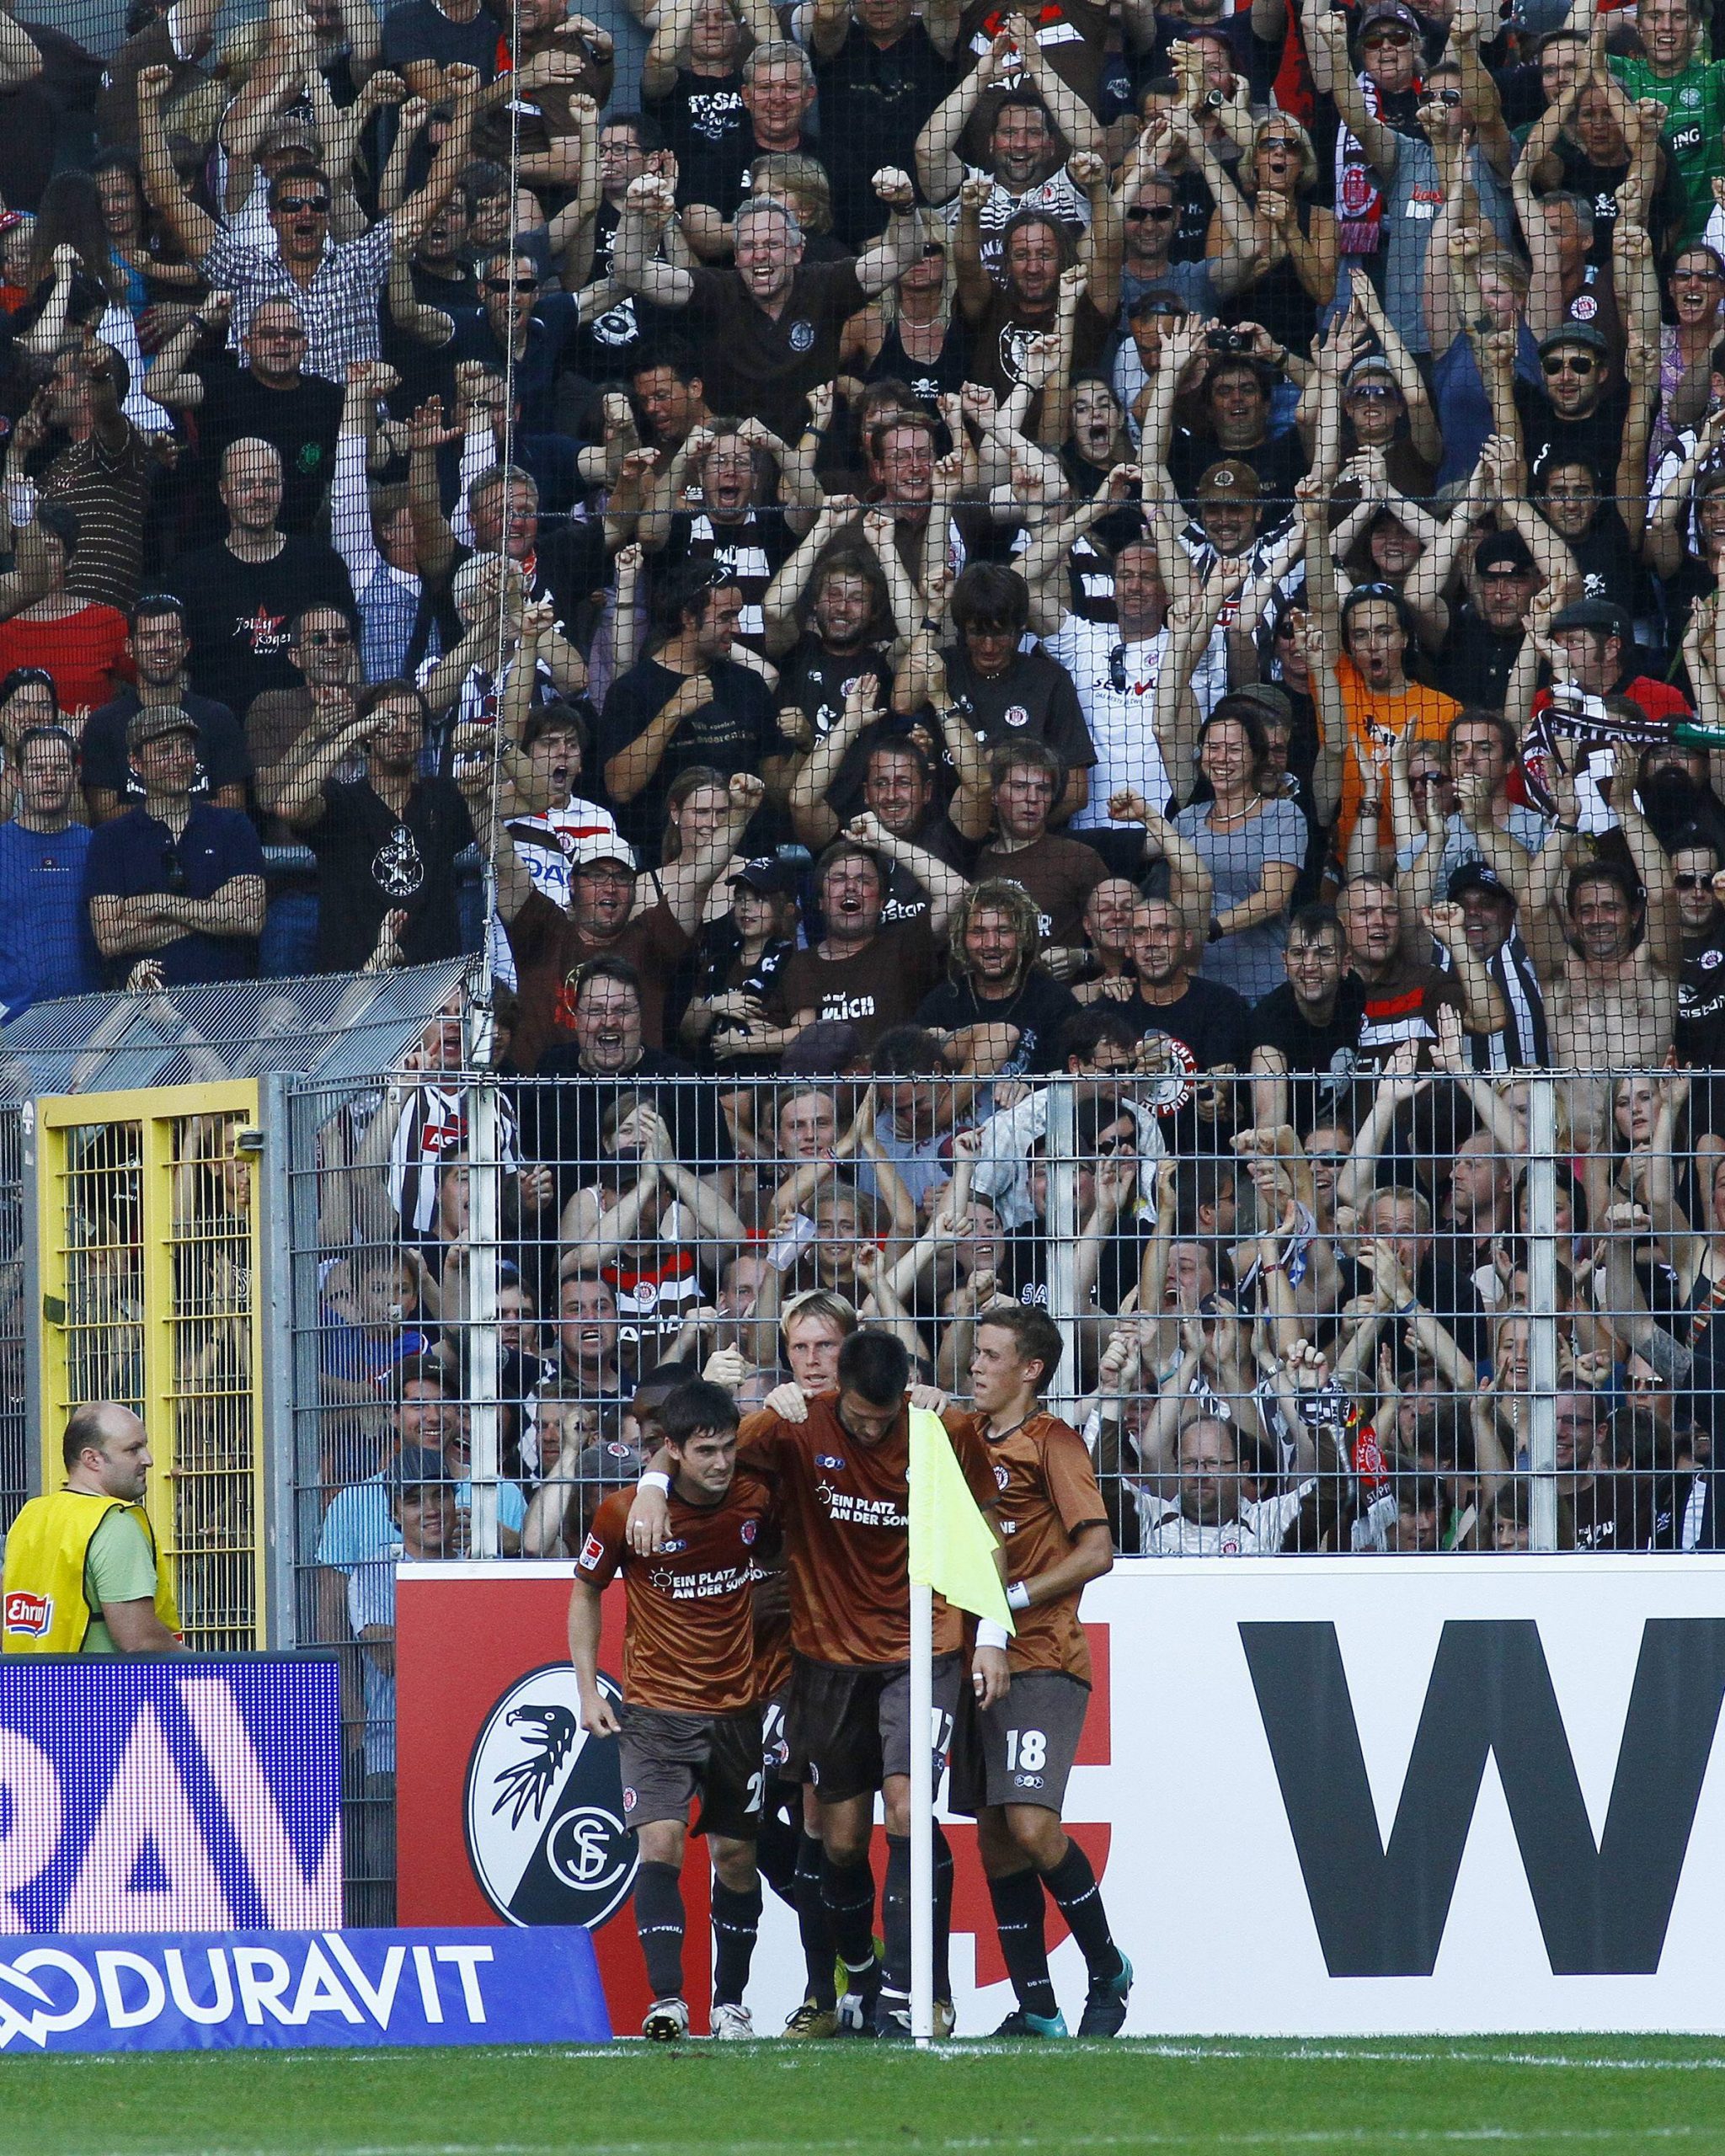 St. Paulis Spieler und die mitgereisten Fans bejubeln St. Paulis letzten Sieg in Freiburg im August 2010.